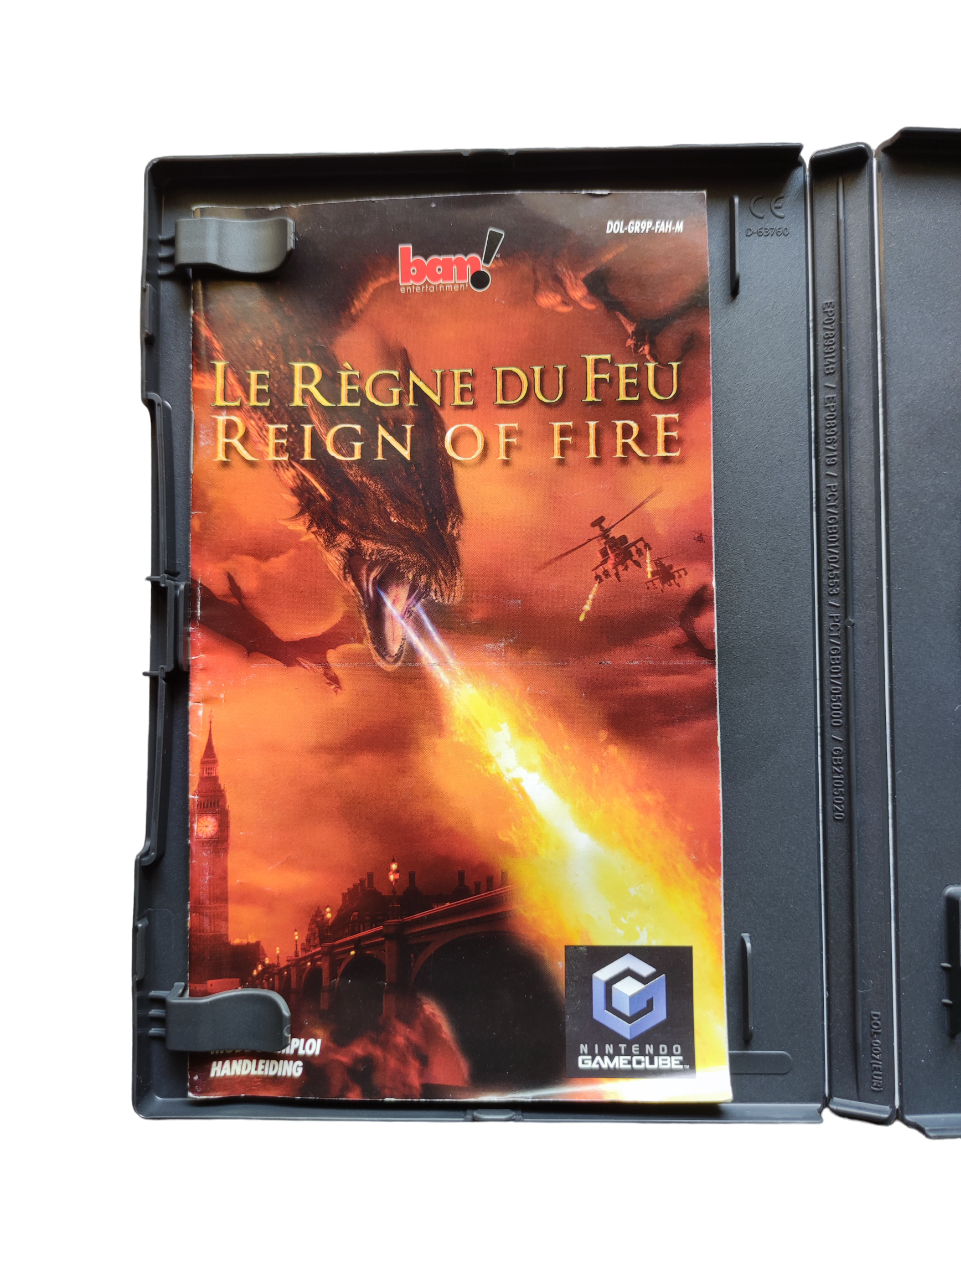 Le Règne de Feu (Reign of Fire)